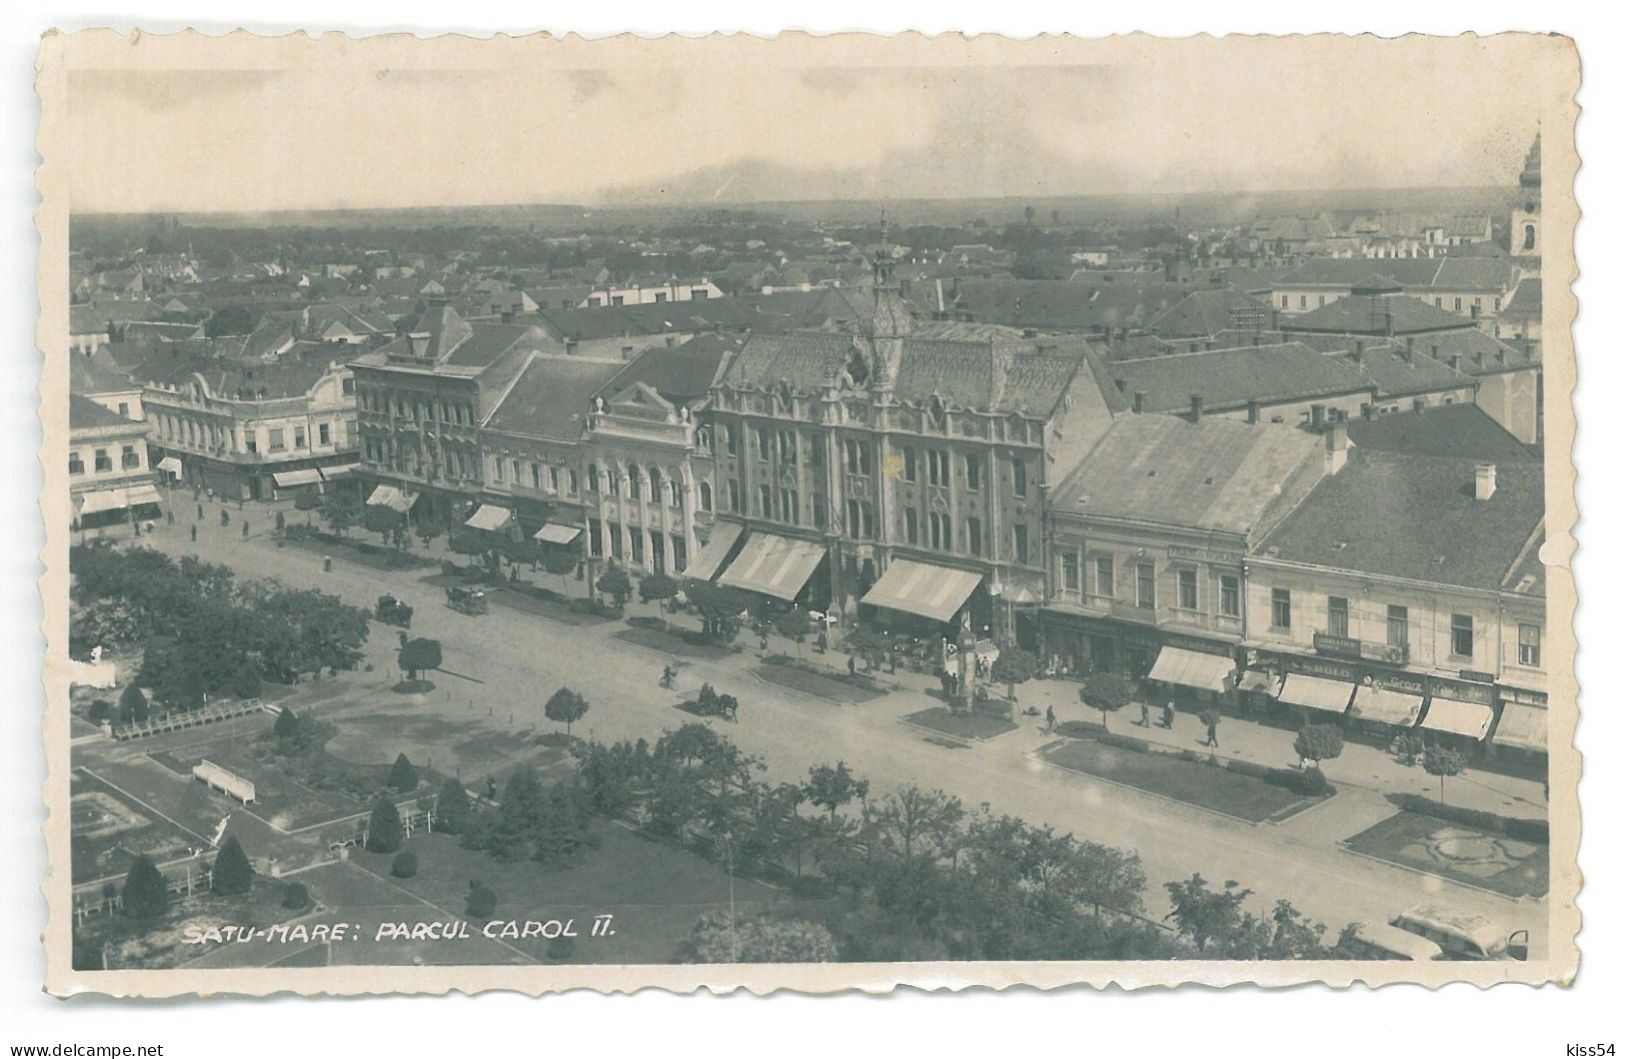 RO 47 - 25224 SATU-MARE, Carol Park, Panorama, Romania - Old Postcard, Real Photo - Used - 1927 - Roumanie